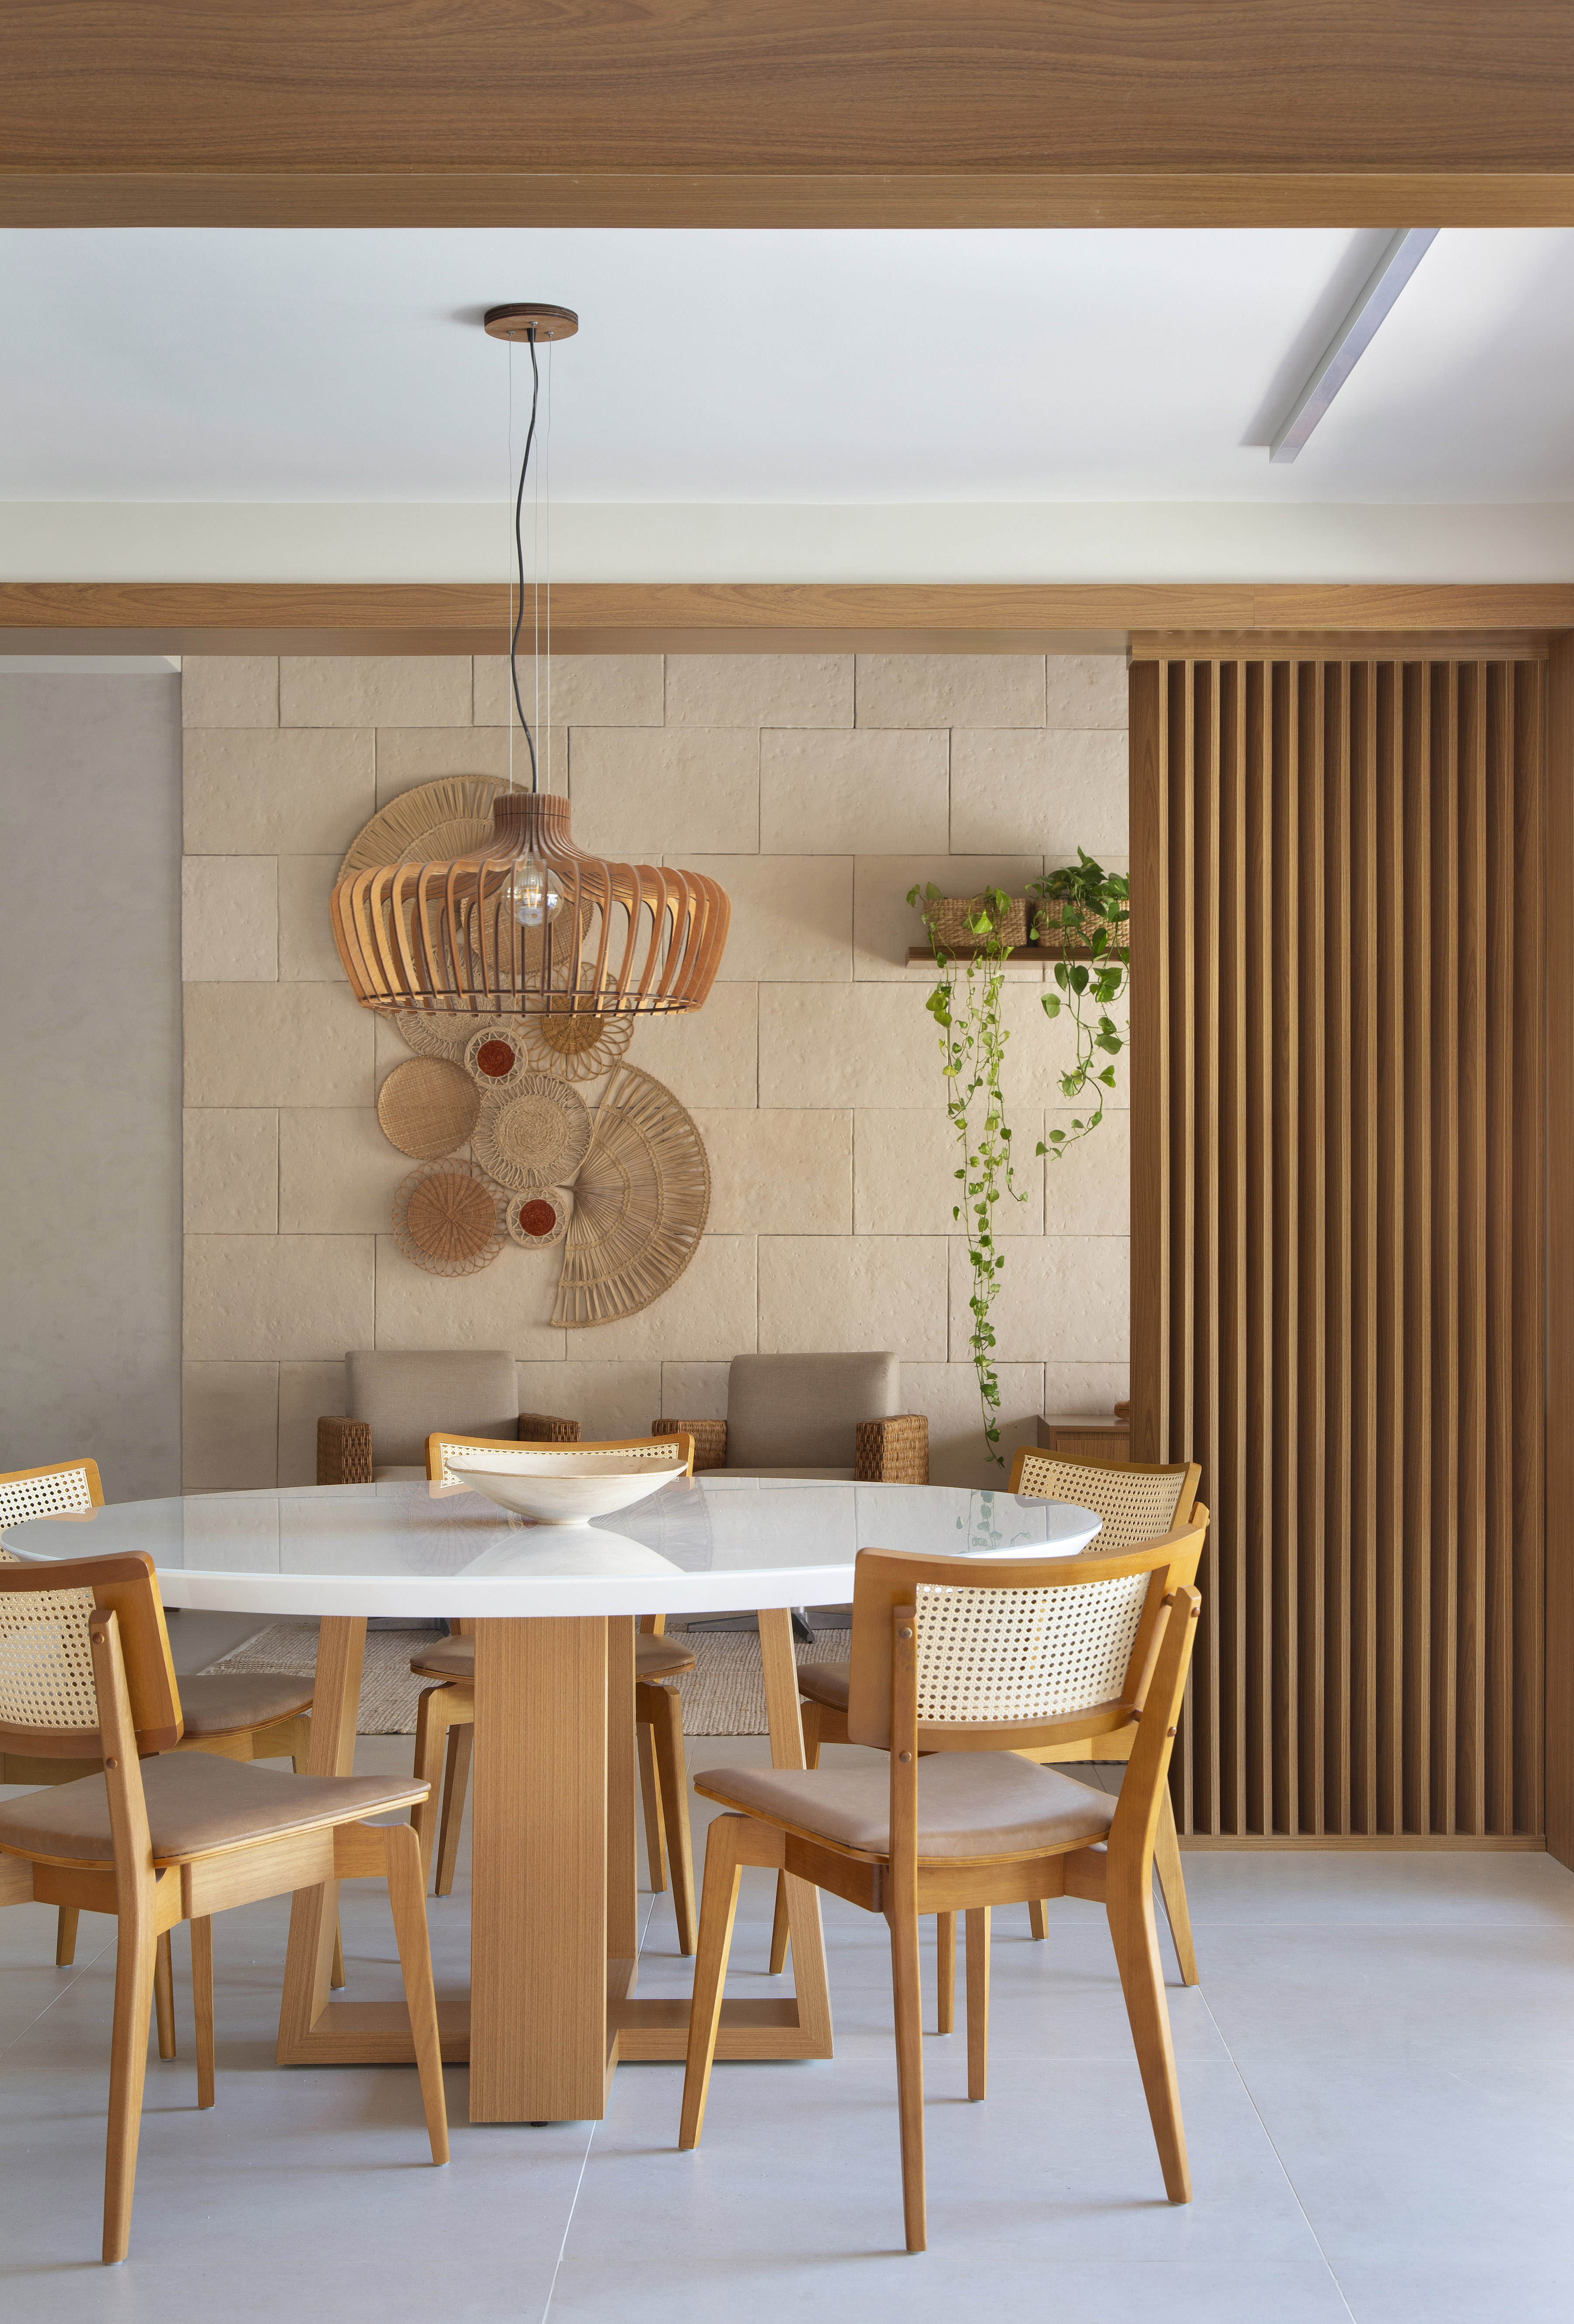 Ilha de cozinha revestida de azulejos com peixes é destaque nesta casa. Projeto de Travessa Arquitetura. Na foto, sala de estar, luminária de palhinha, mesa redonda de tampo branco.